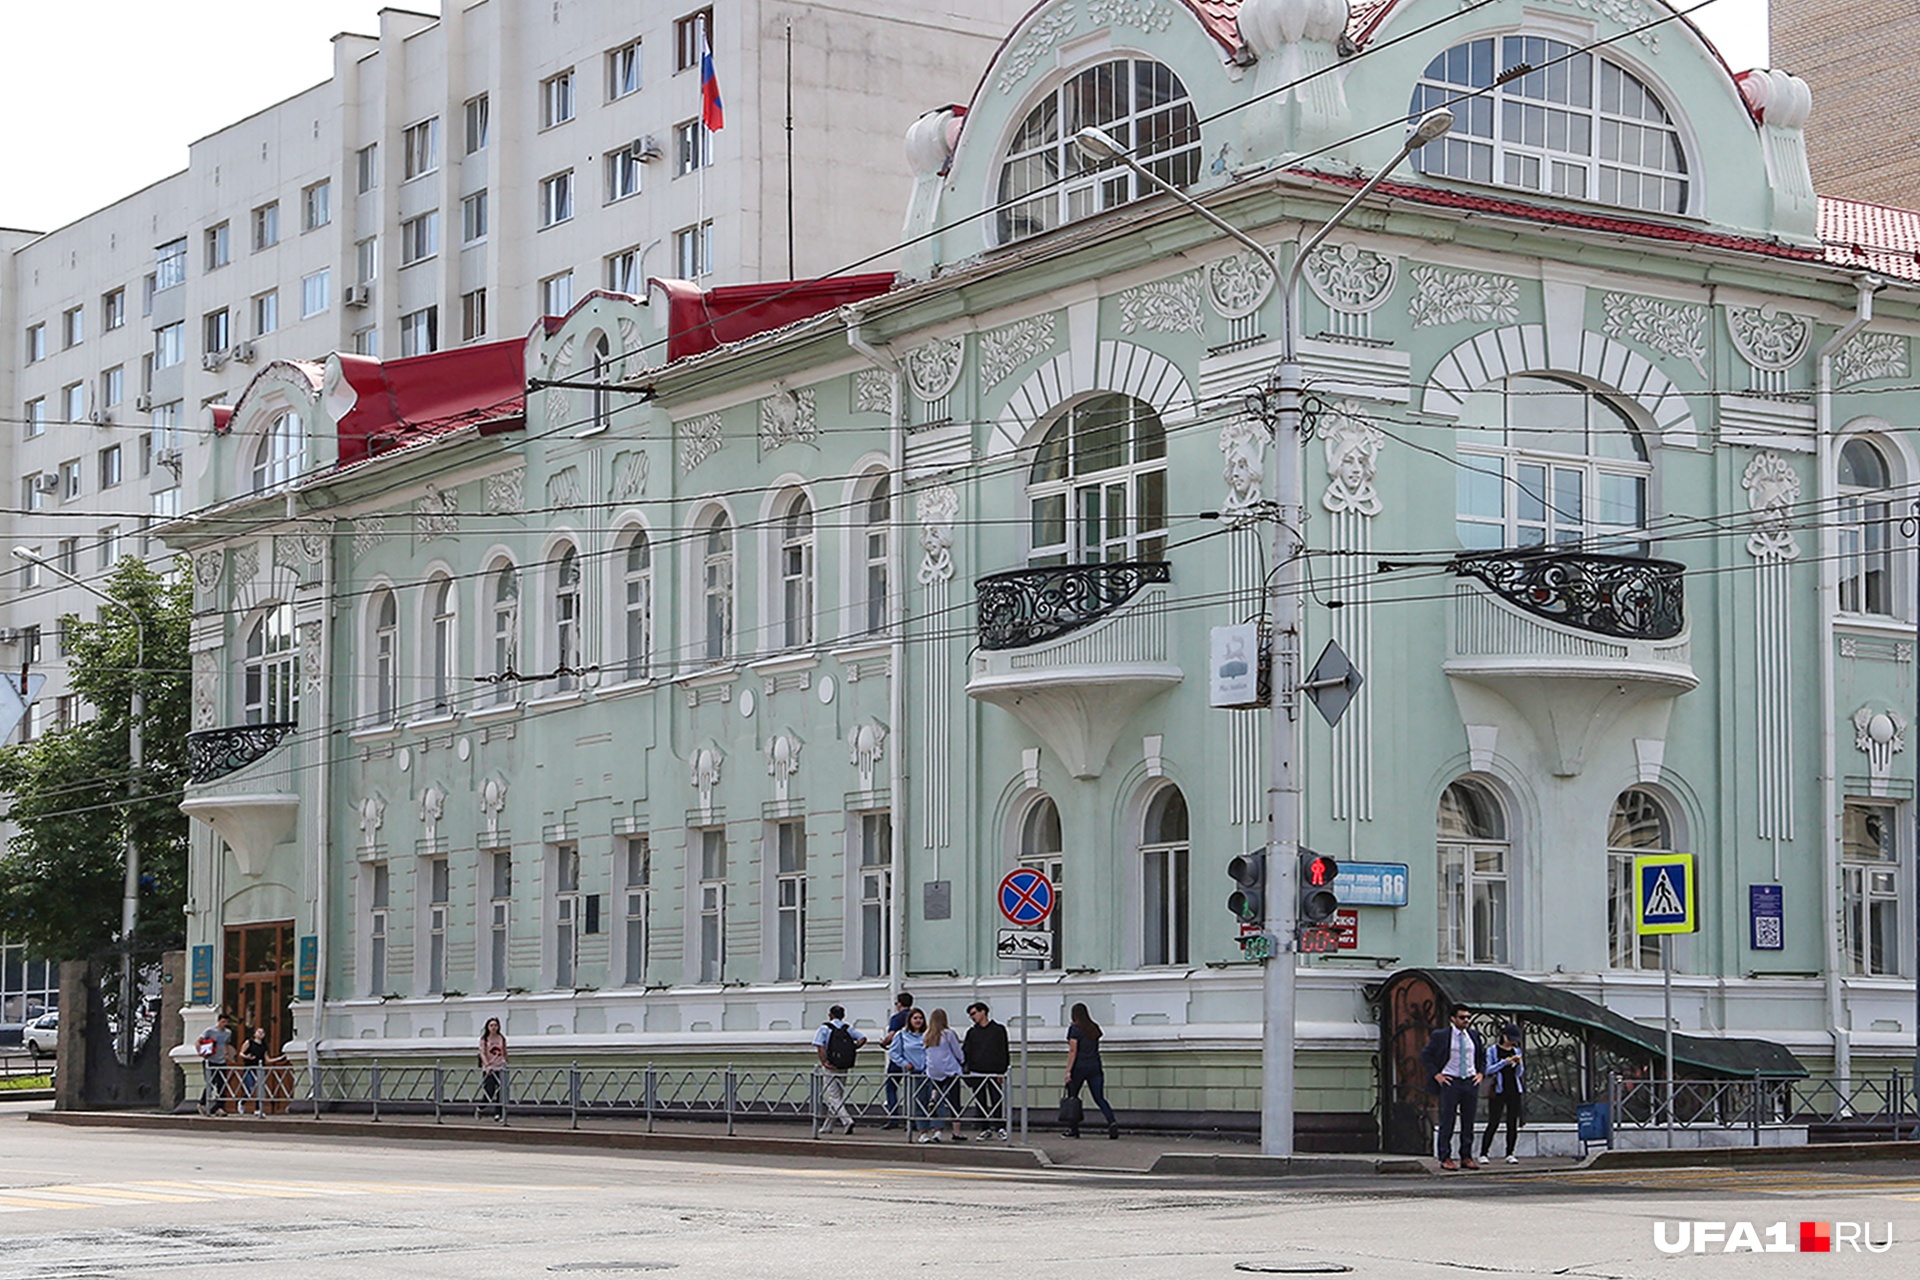 Здание музея имени Нестерова знают многие уфимцы